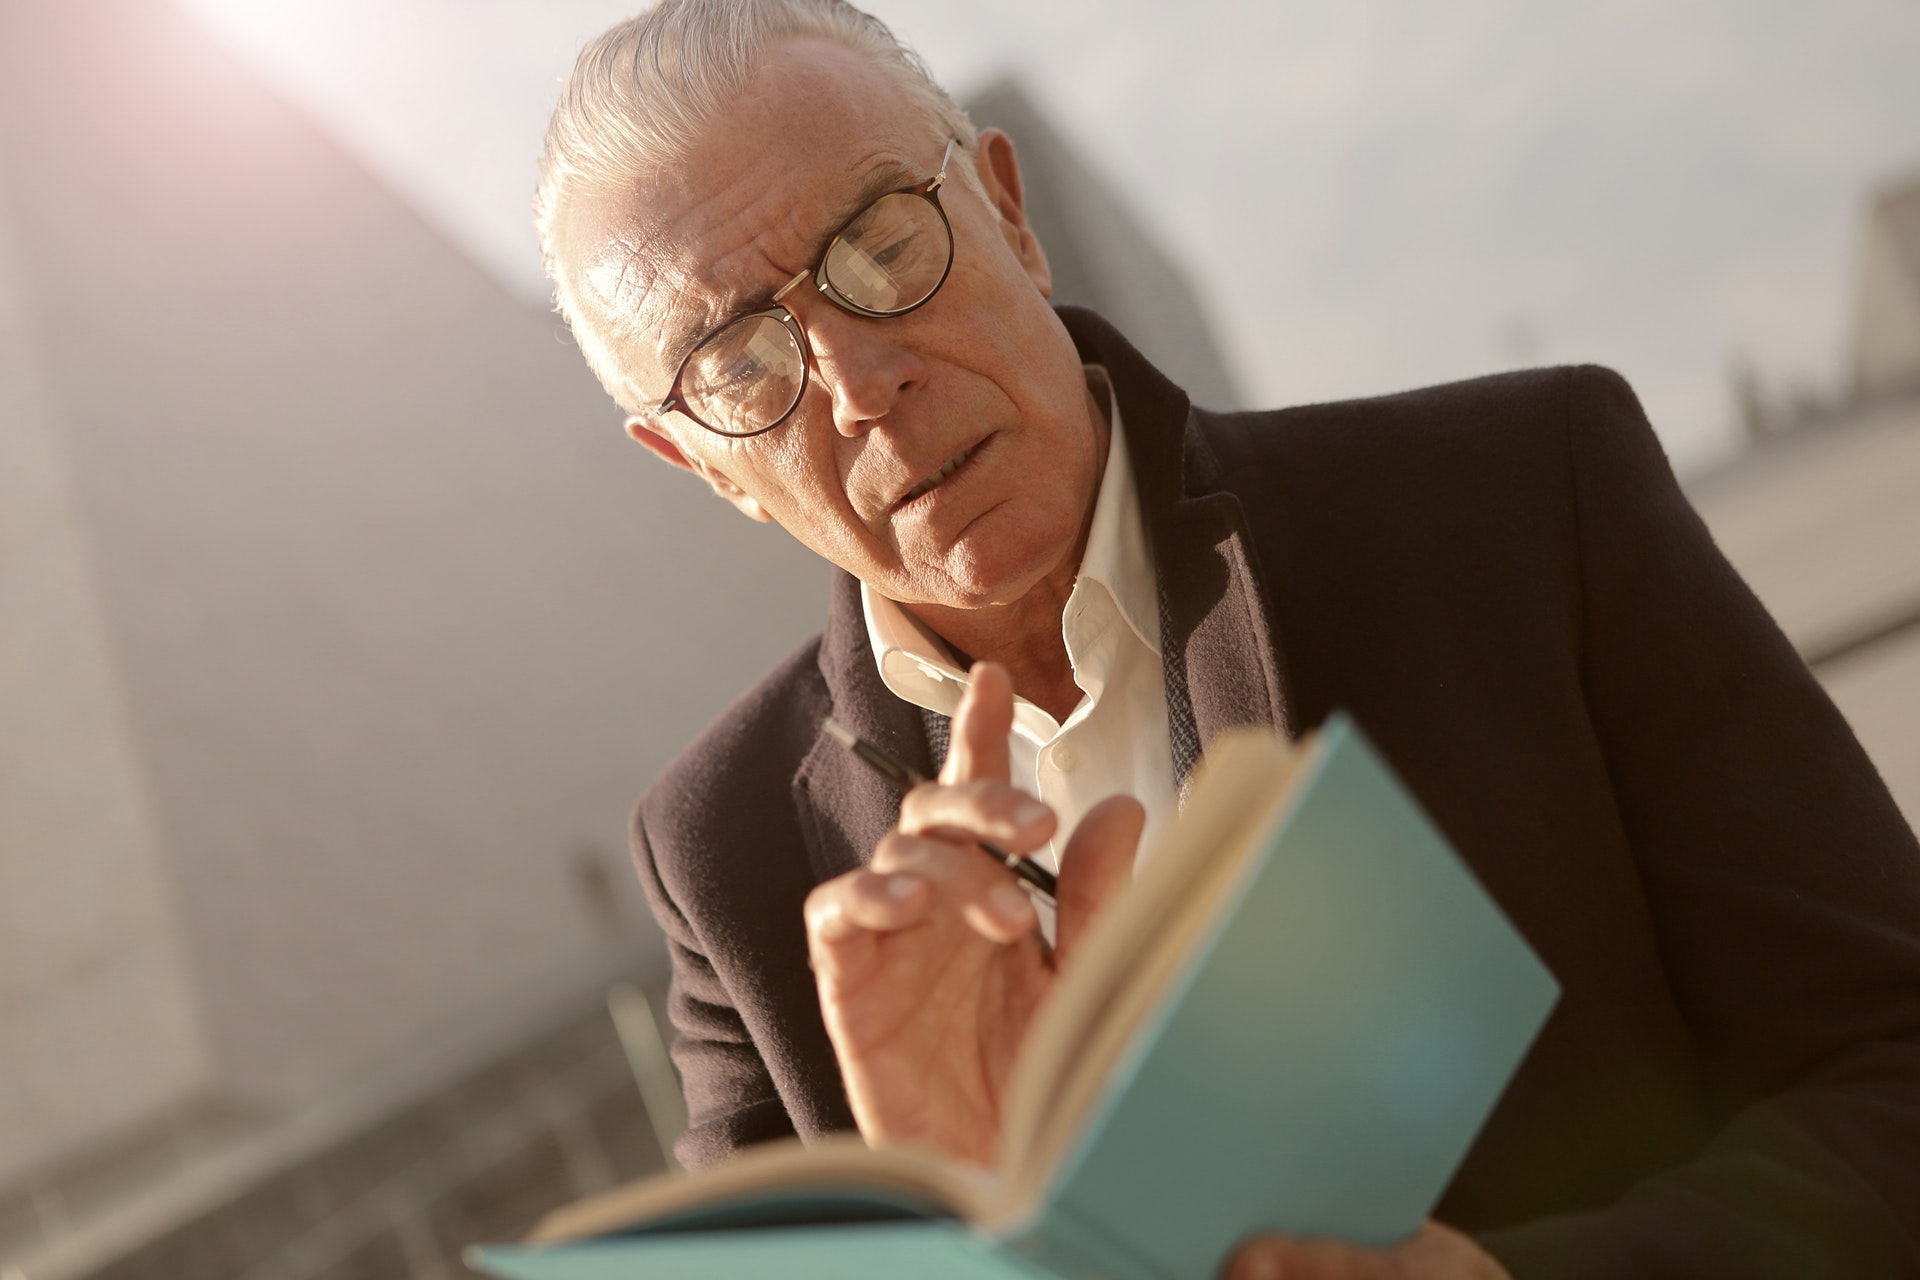 Racconto Luana la puttana - Anziano legge un libro